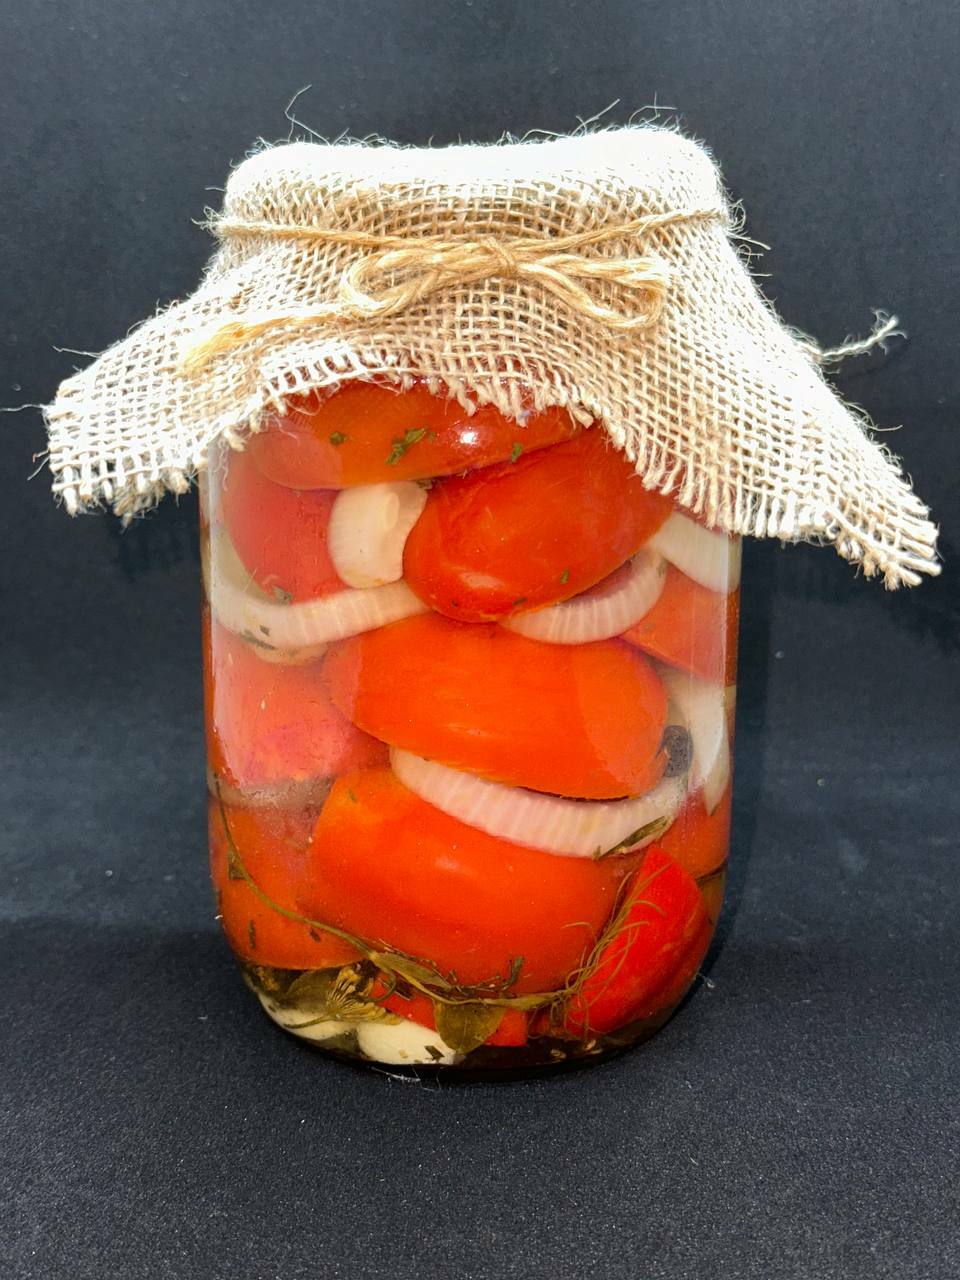 Маринованные помидоры с луком